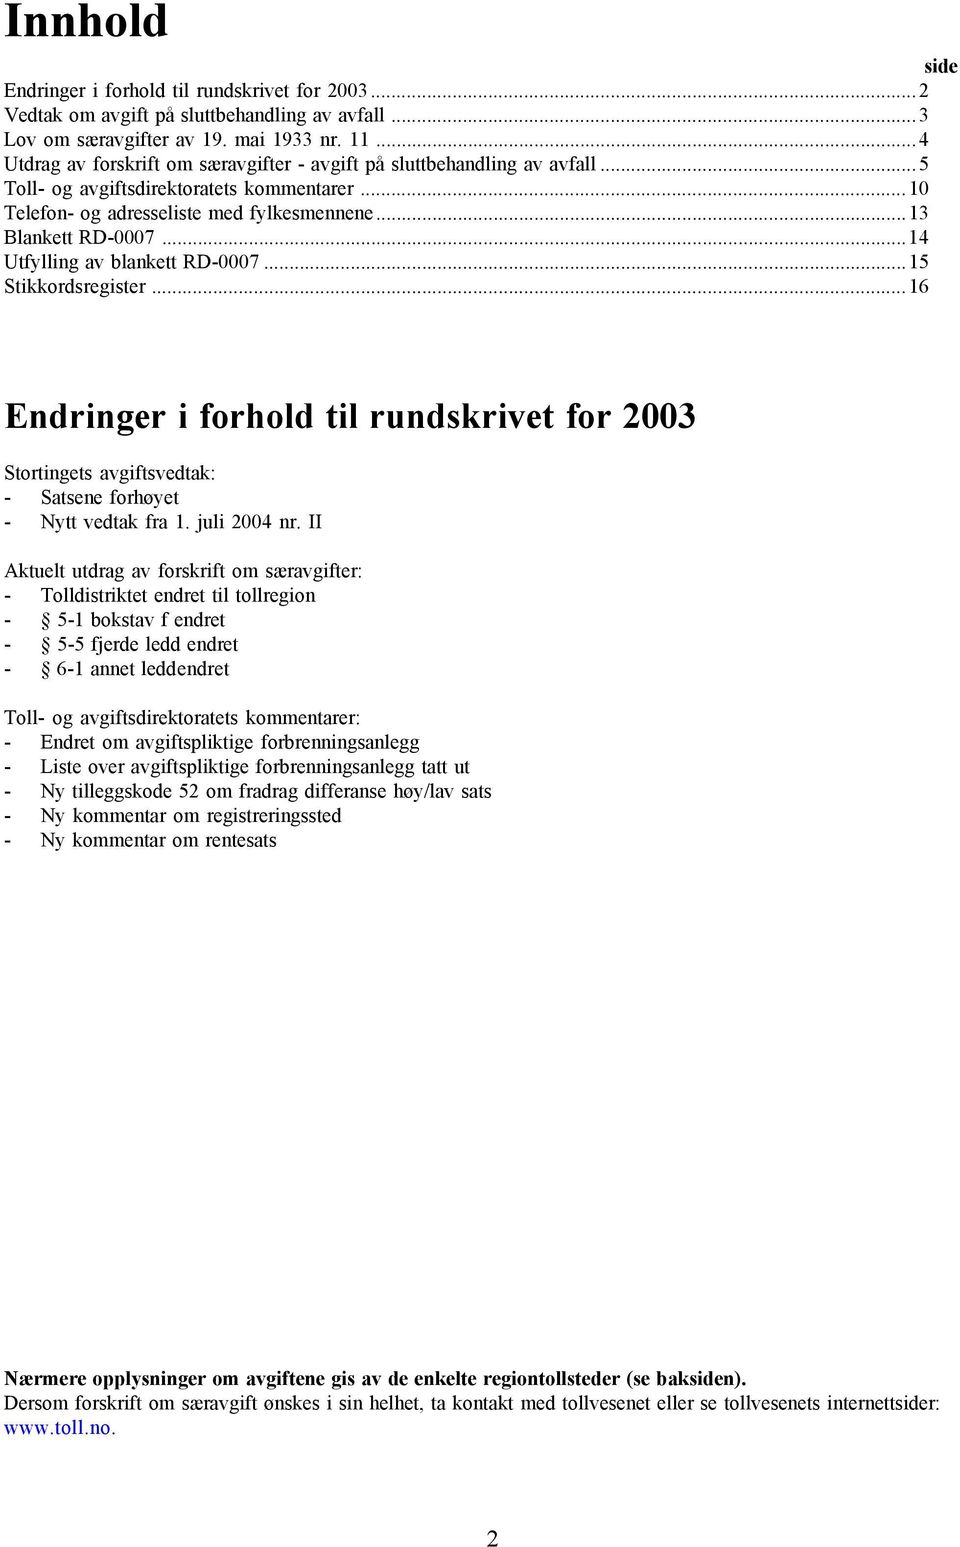 ..14 Utfylling av blankett RD-0007...15 Stikkordsregister...16 Endringer i forhold til rundskrivet for 2003 Stortingets avgiftsvedtak: - Satsene forhøyet - Nytt vedtak fra 1. juli 2004 nr.